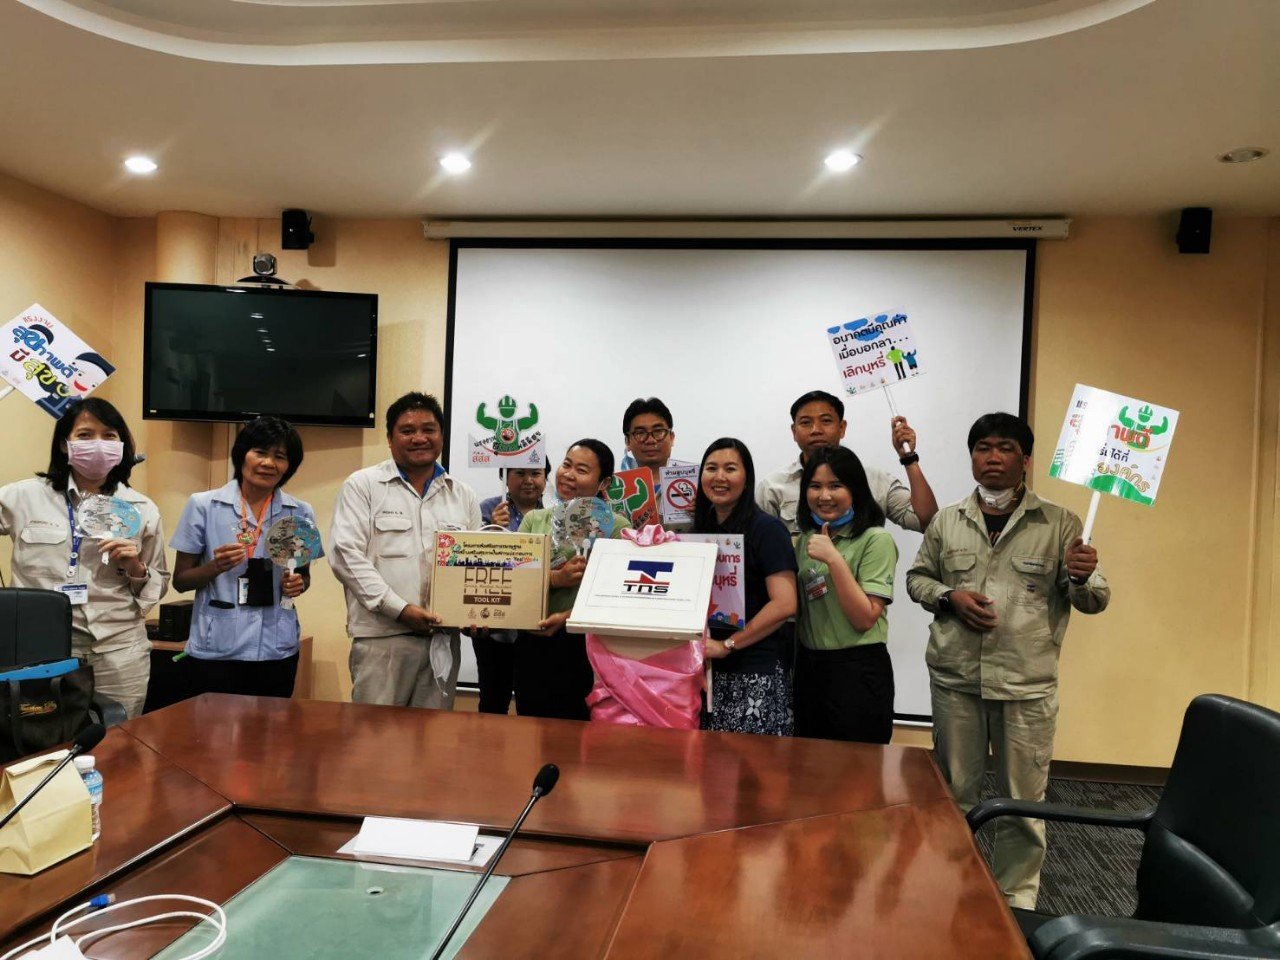 ทีมงานโครงการส่งเสริมฯ เยี่ยมชมโครงการ “TNS Better Health Better Wellness (โครงการสุขภาพดี ทีเอ็นเอส มีสุข)” ที่บริษัทไทยนิปปอนฯ จังหวัดฉะเชิงเทรา